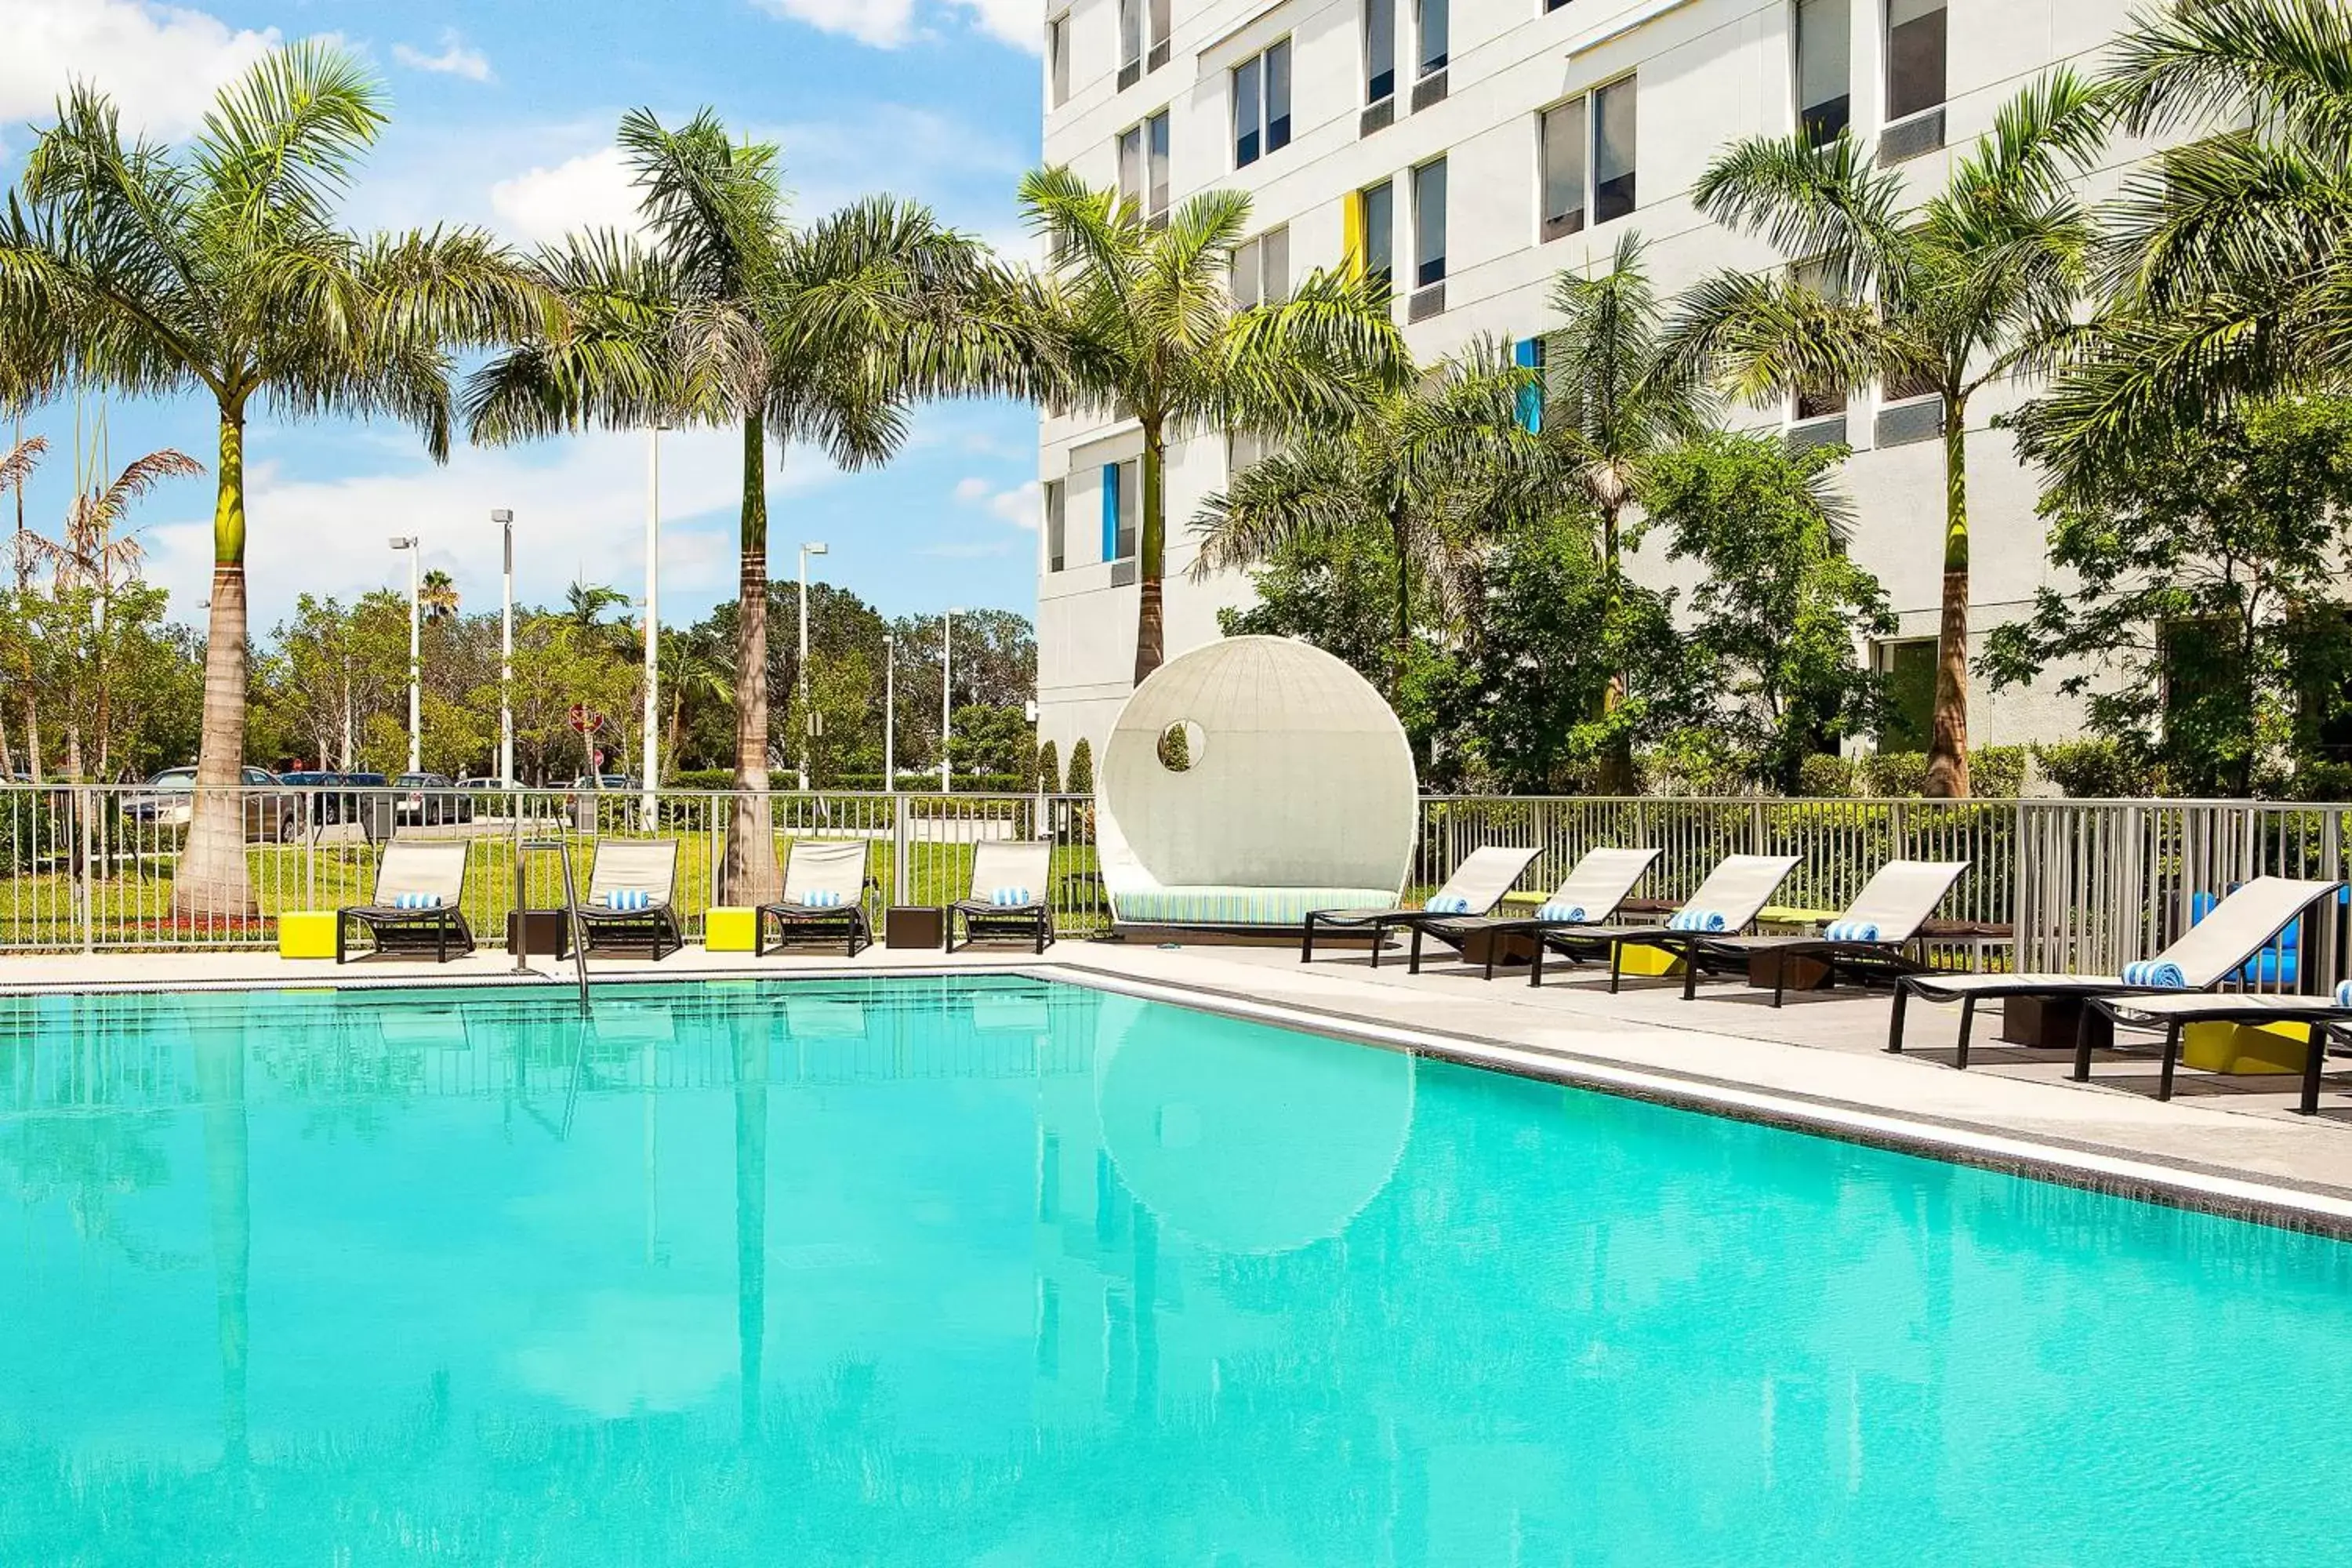 Swimming Pool in Aloft Miami Doral